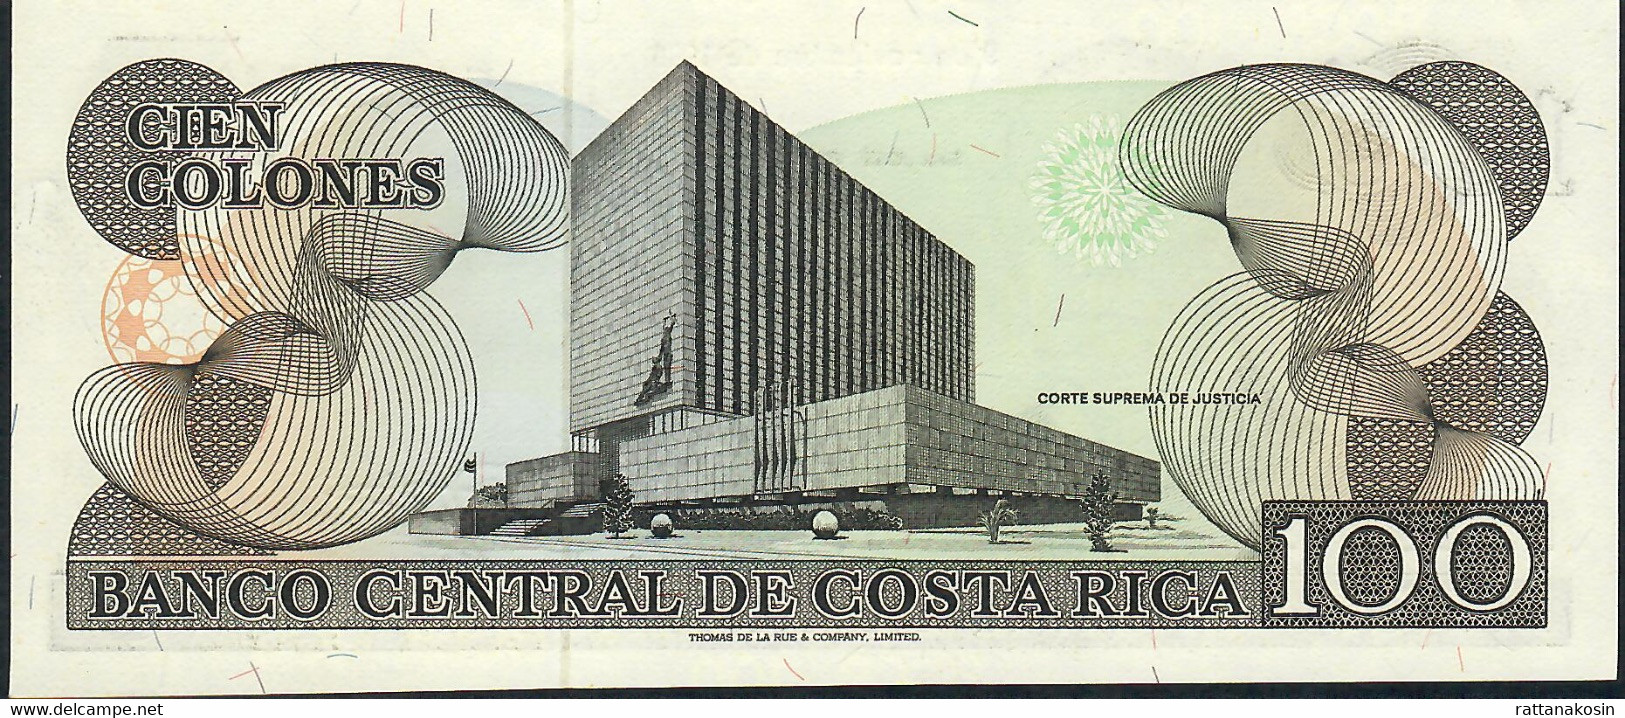 COSTA RICA   P248b 100   COLONES 1988 Serie E   UNC. - Costa Rica